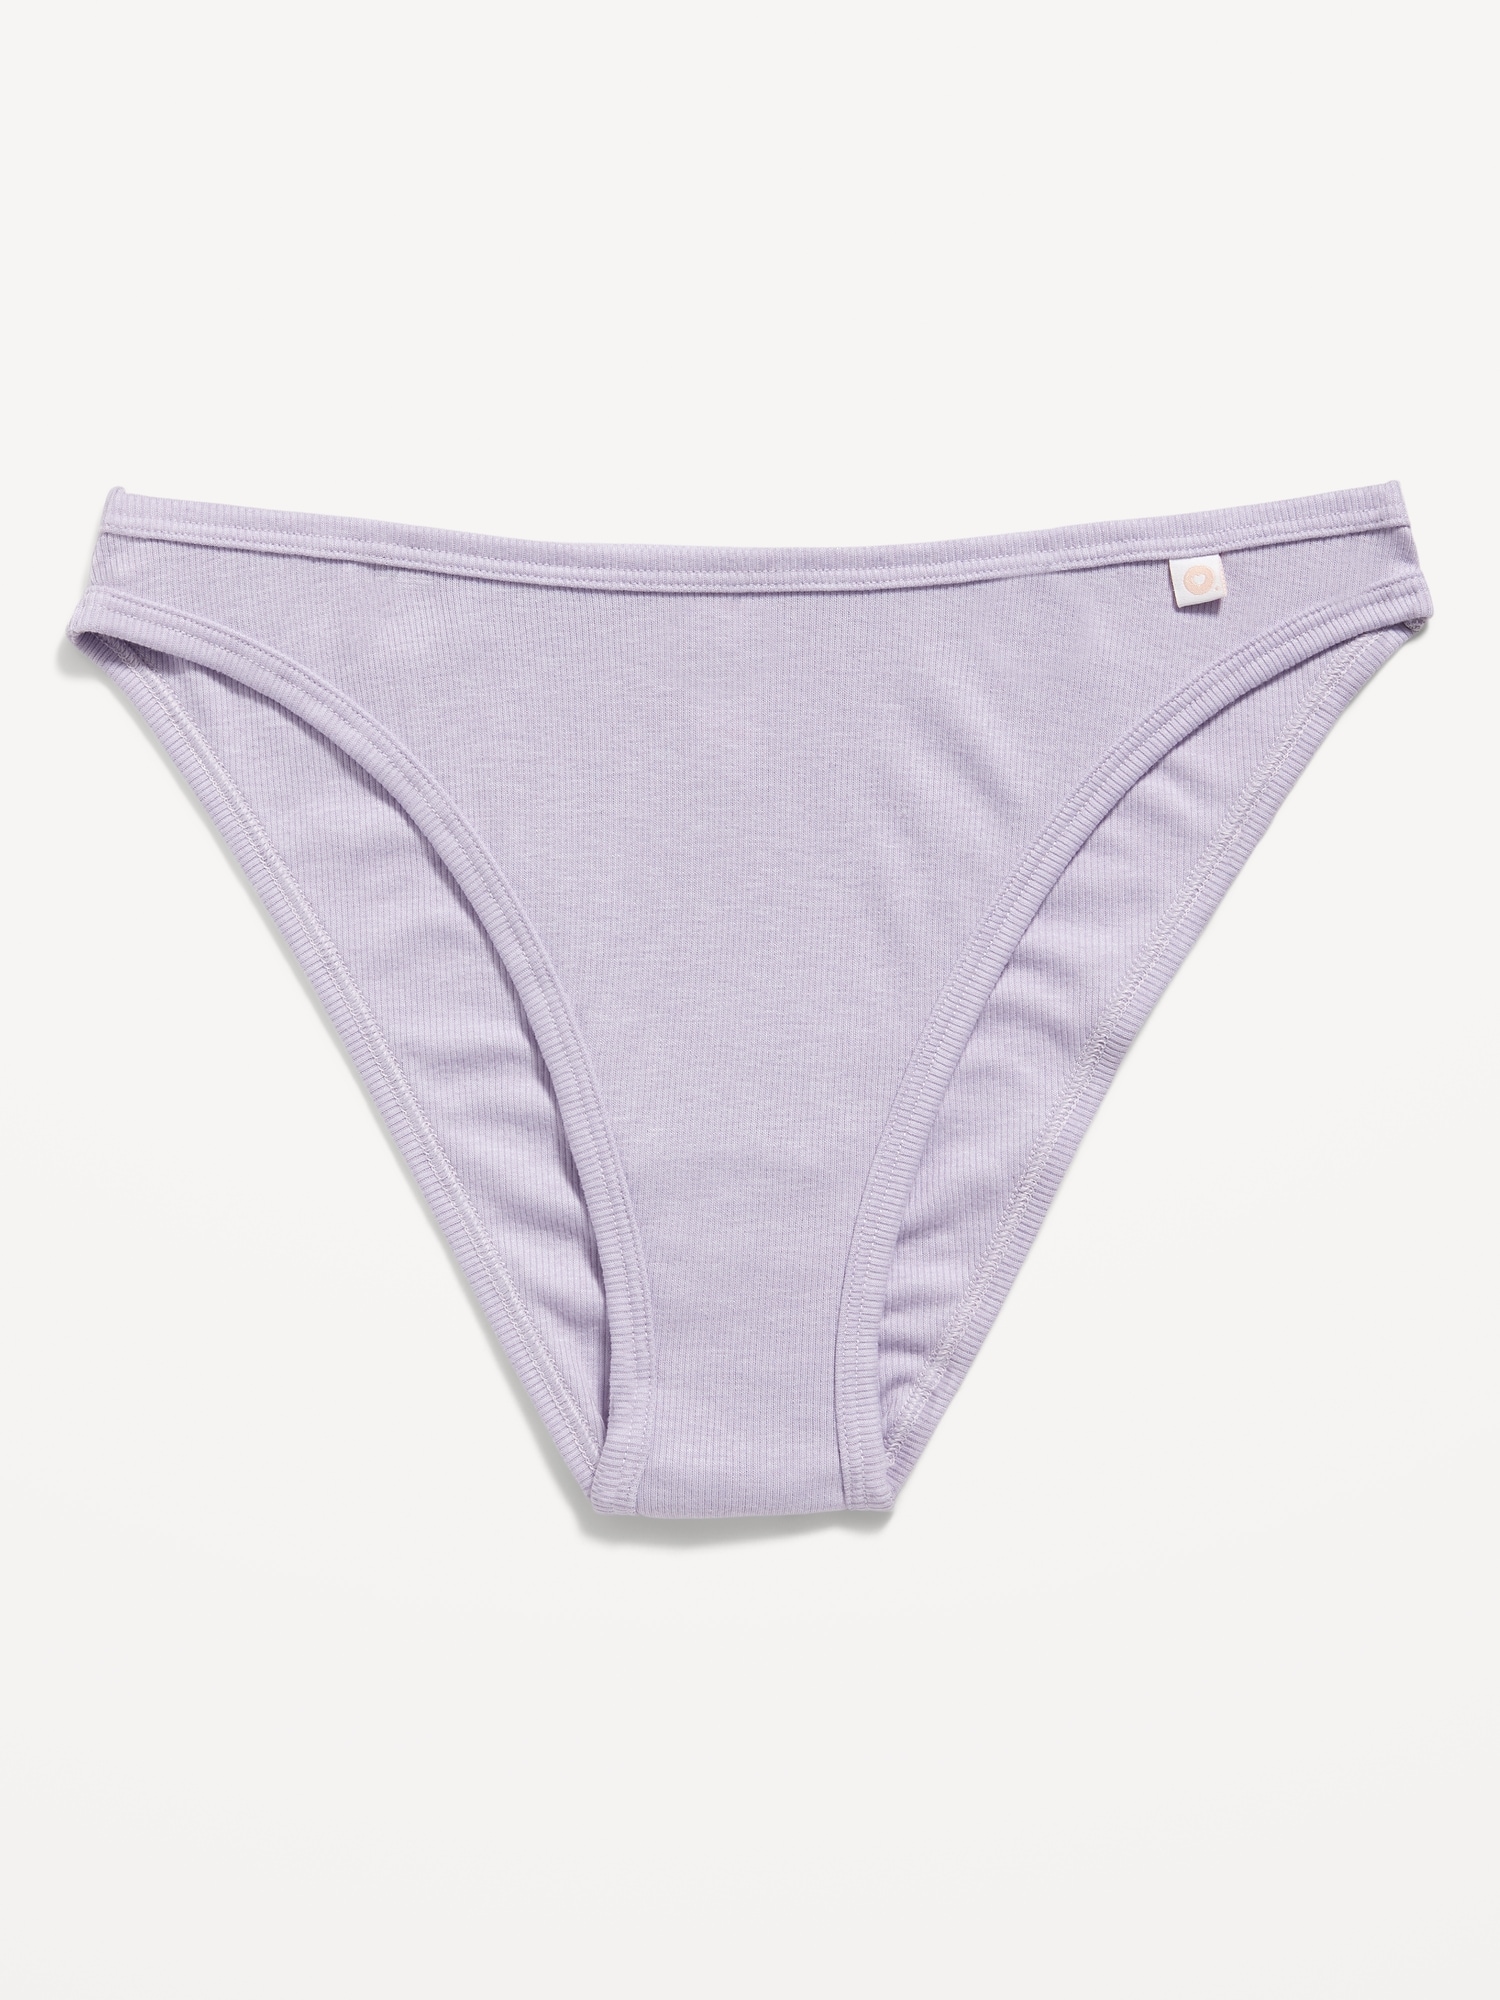 Size Medium Vintage Y2K Underwear Ladies Unused Polyester/ Acetate Knickers  Nude Beige Latvia Knickers 1985 -  Israel